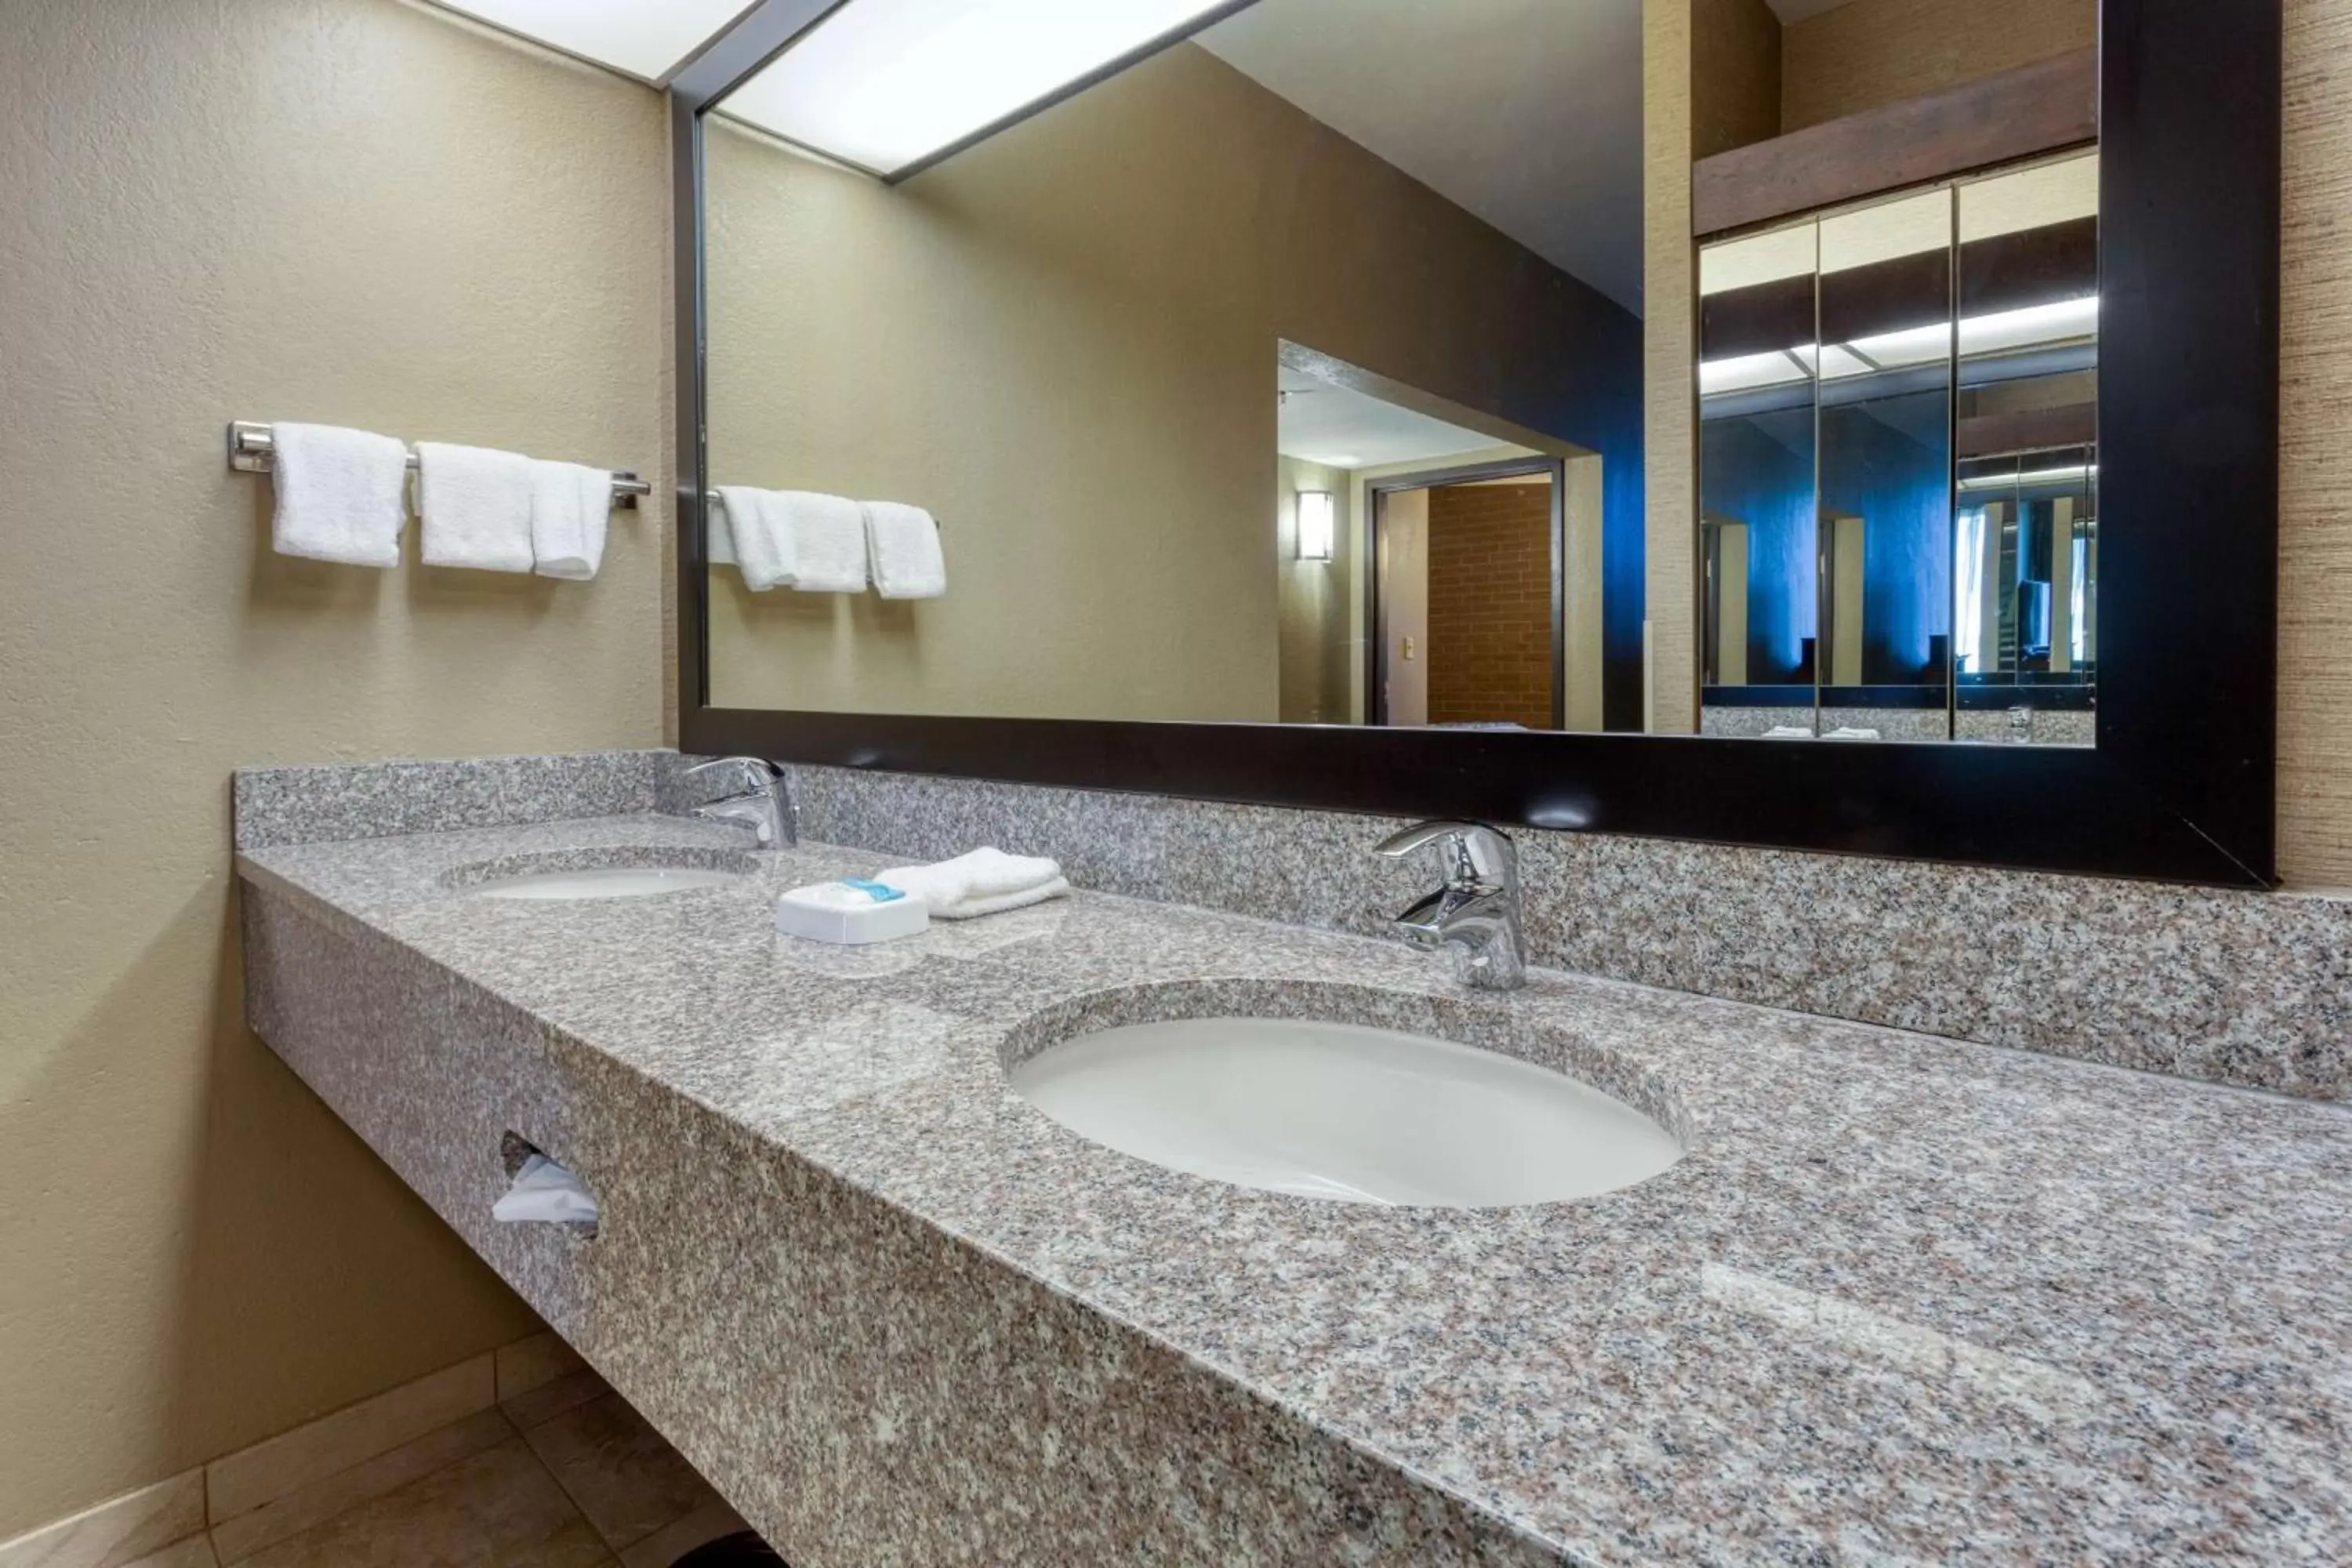 Bathroom in Drury Inn & Suites Atlanta Airport